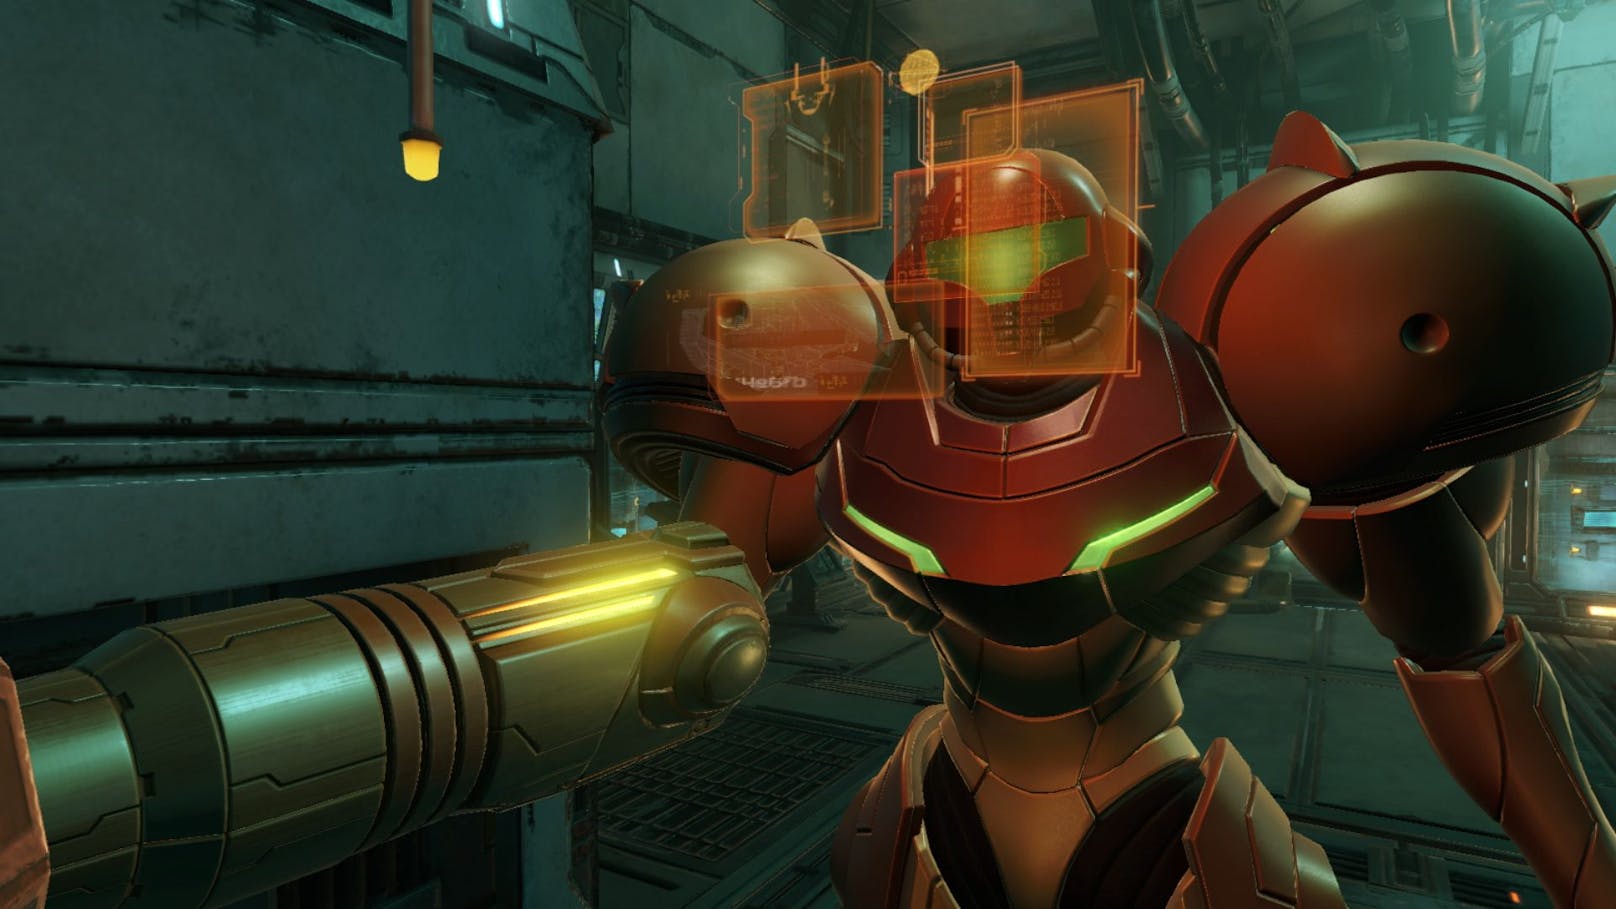 Die Entwickler von den Retro Studios bringen gemeinsam mit dem Unternehmen Iron Galaxy einen Kult-Titel auf die Nintendo Switch. "Metroid Prime" erschien ursprünglich ...